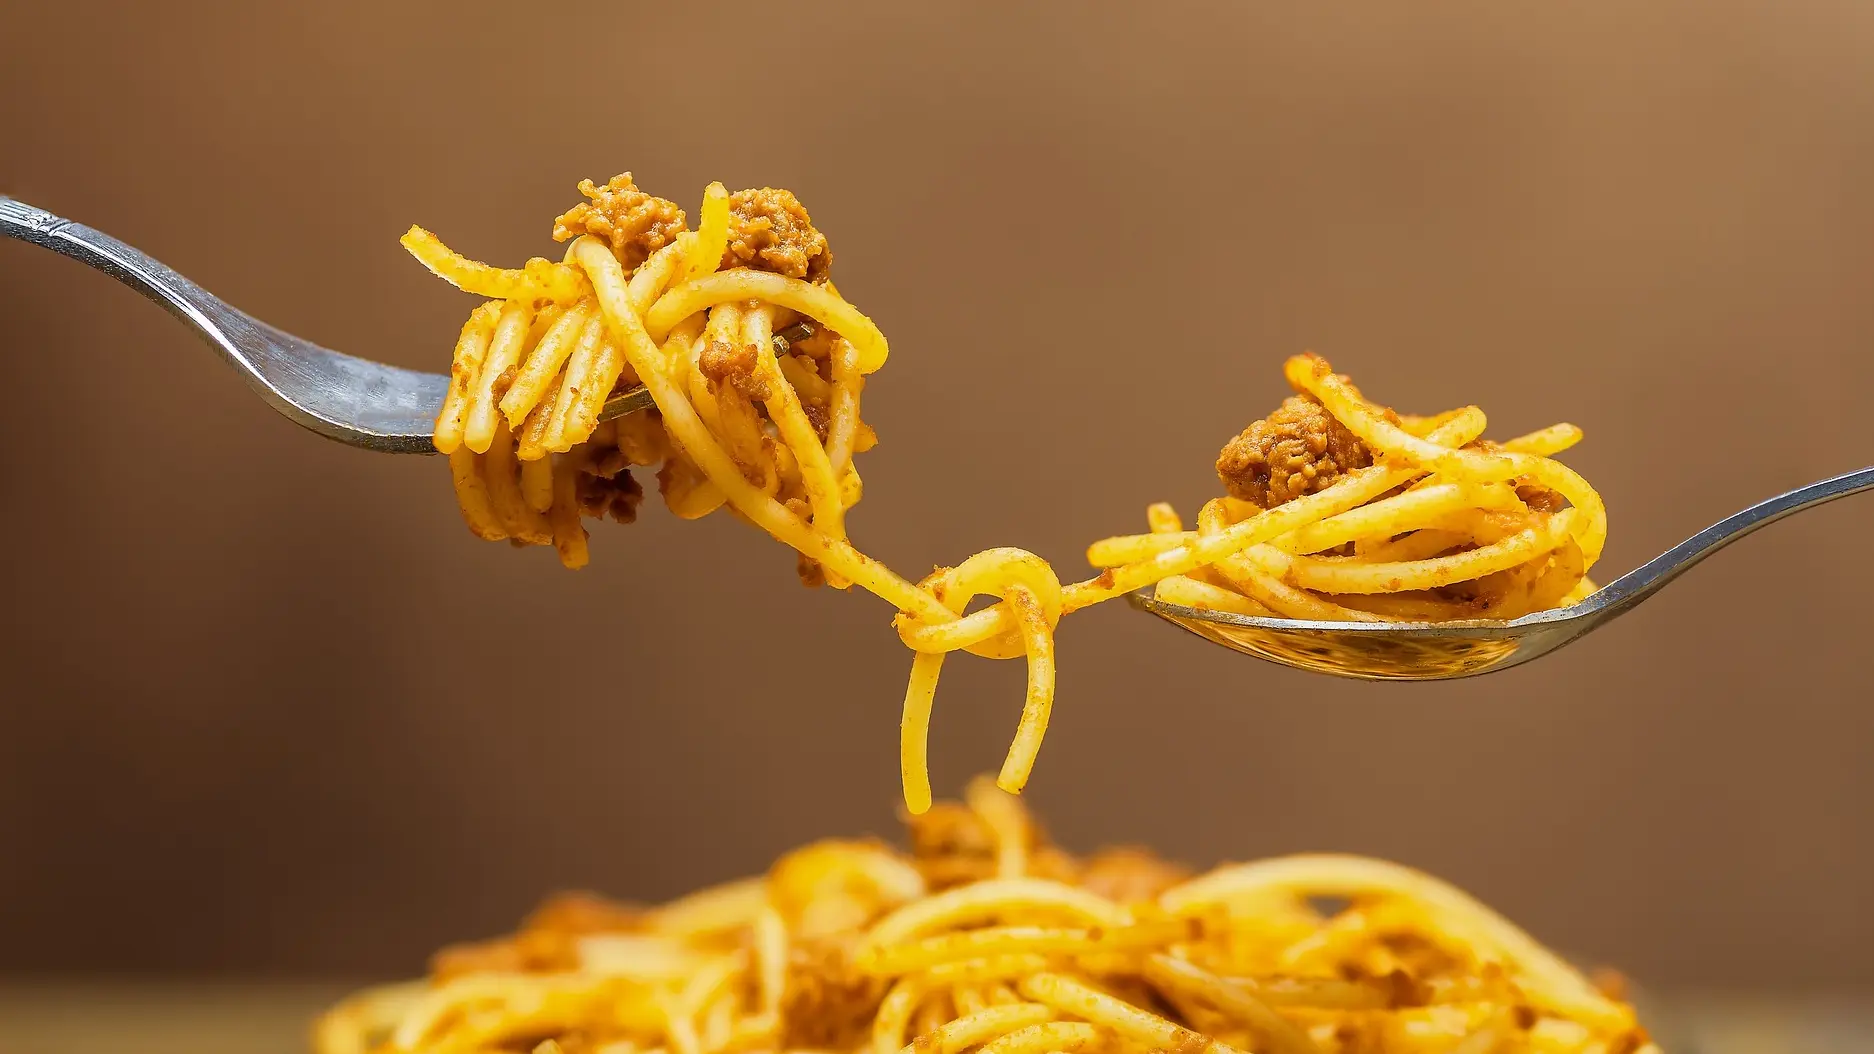 špageti bolonjeze pixabay-1665428355900.webp